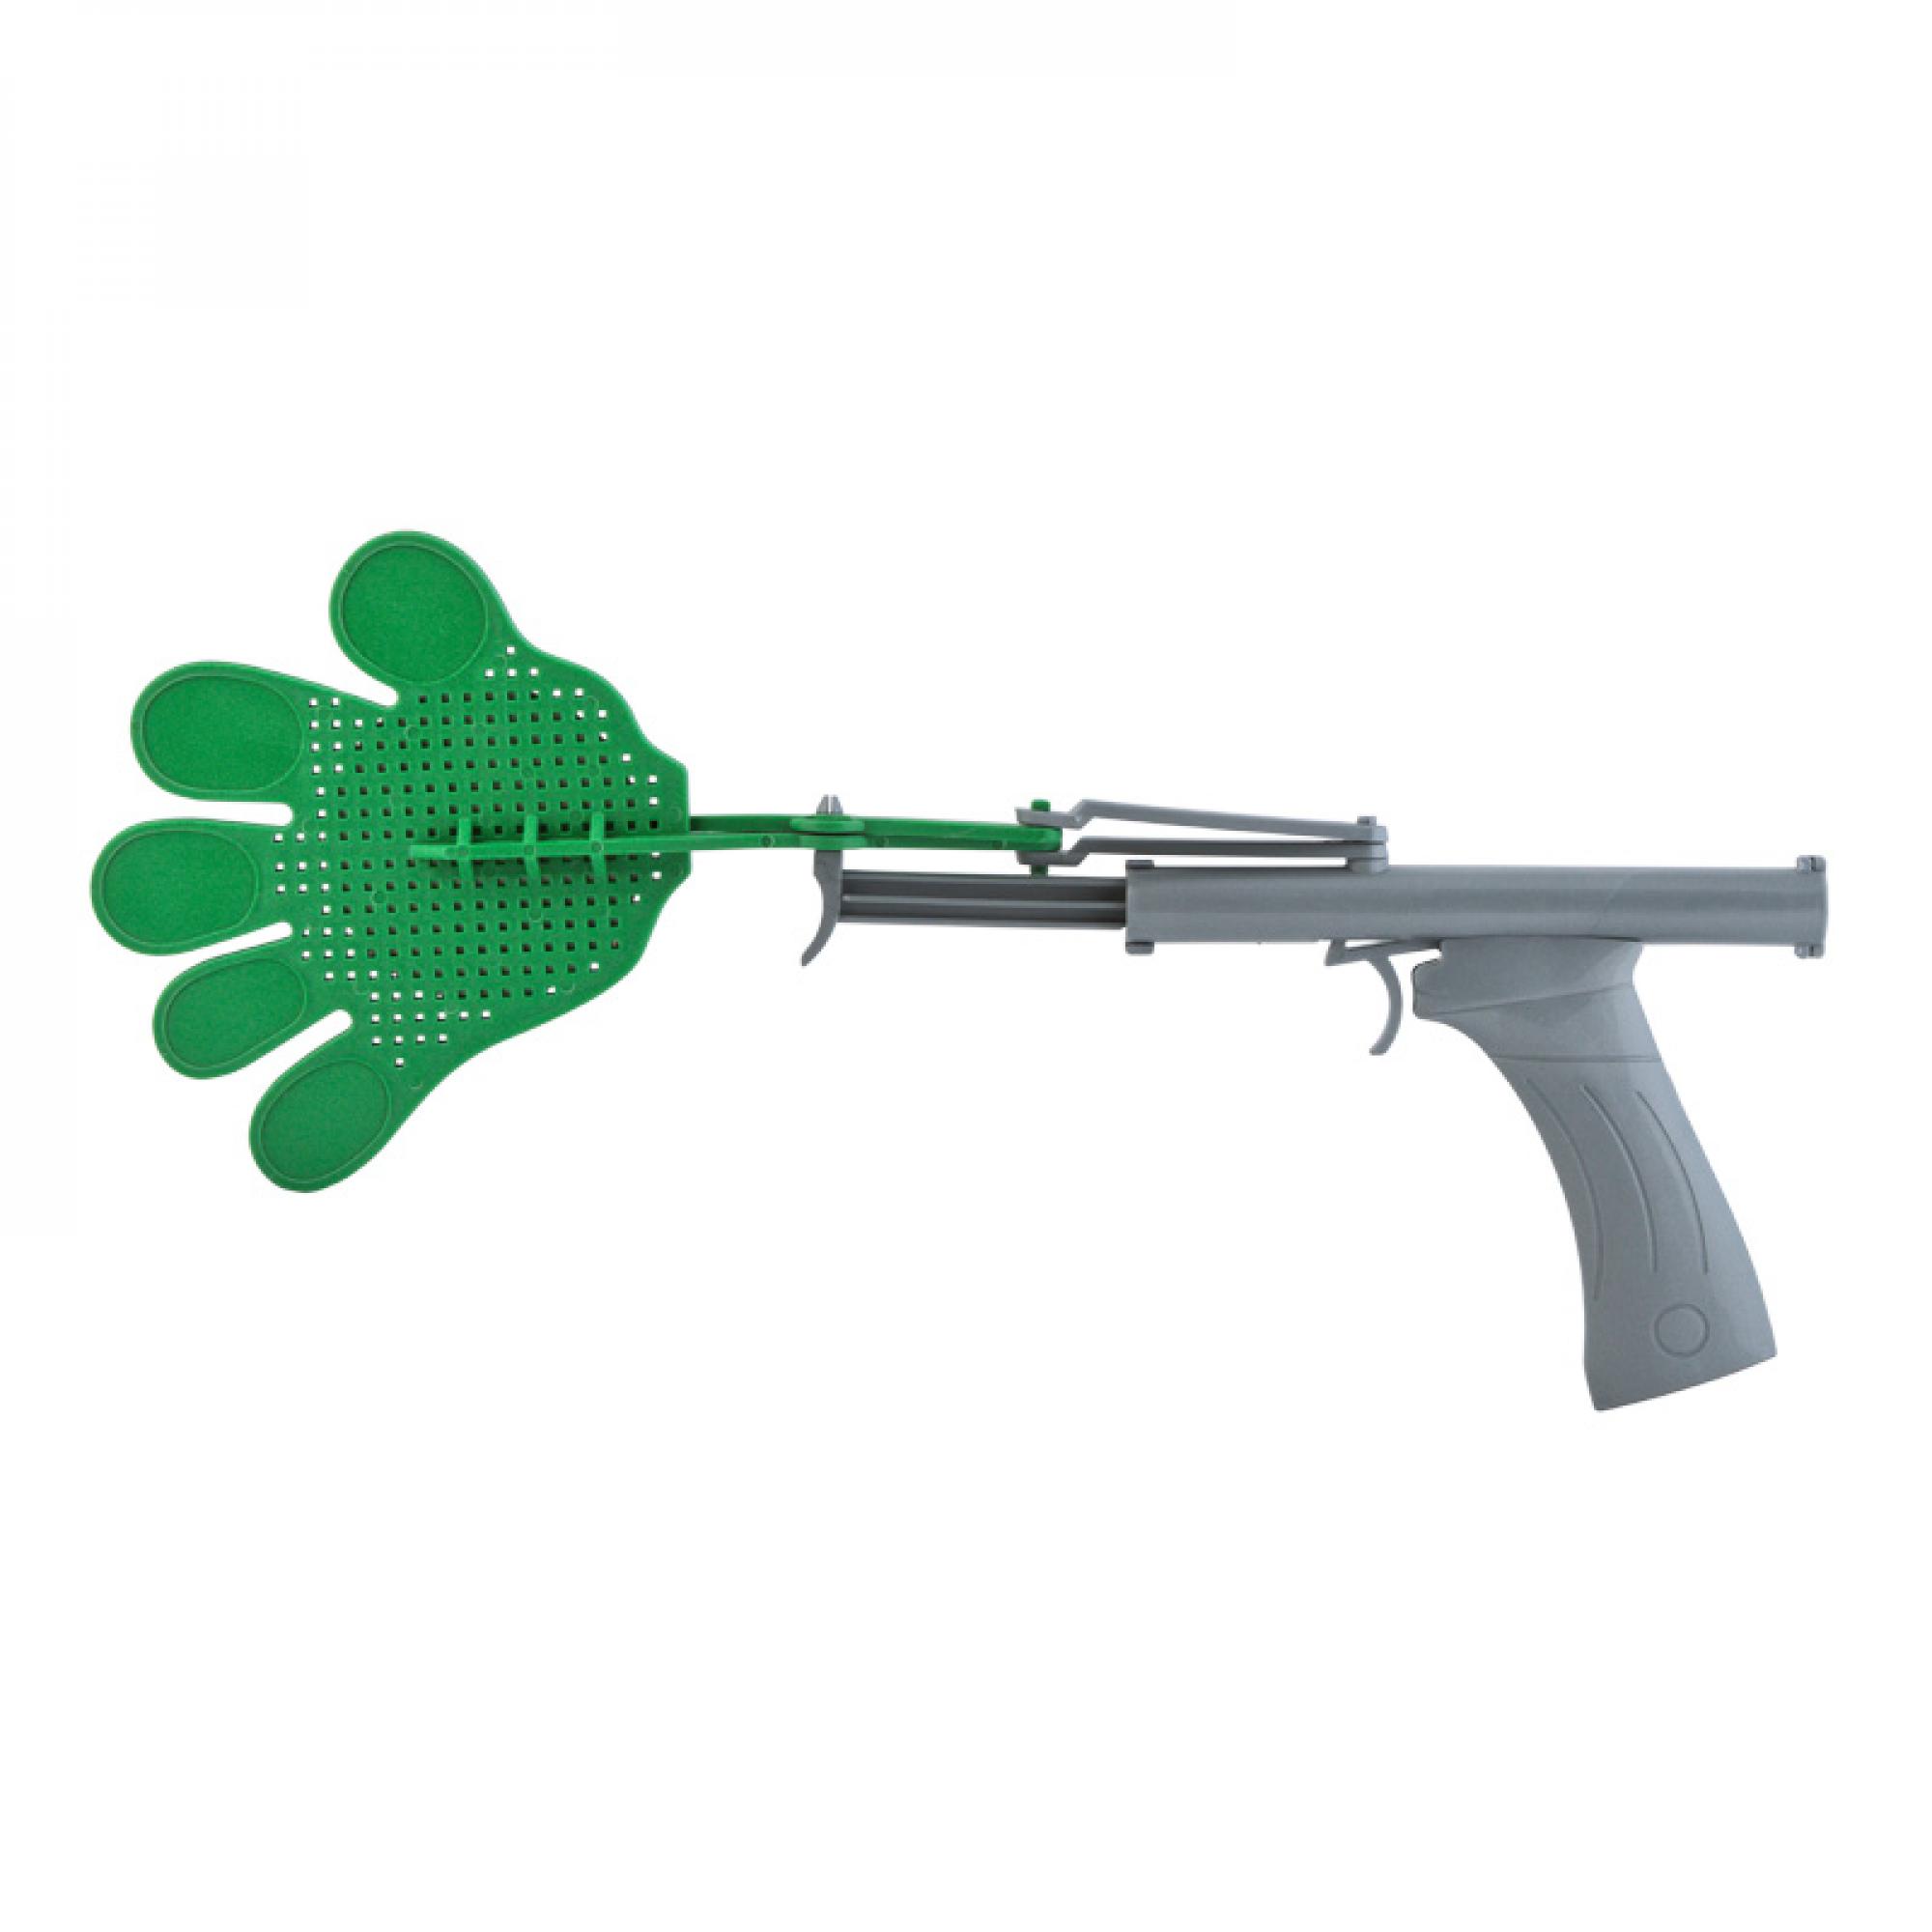 Пистолет-ладошки "Clap", цвет зеленый с серебром, фото 1